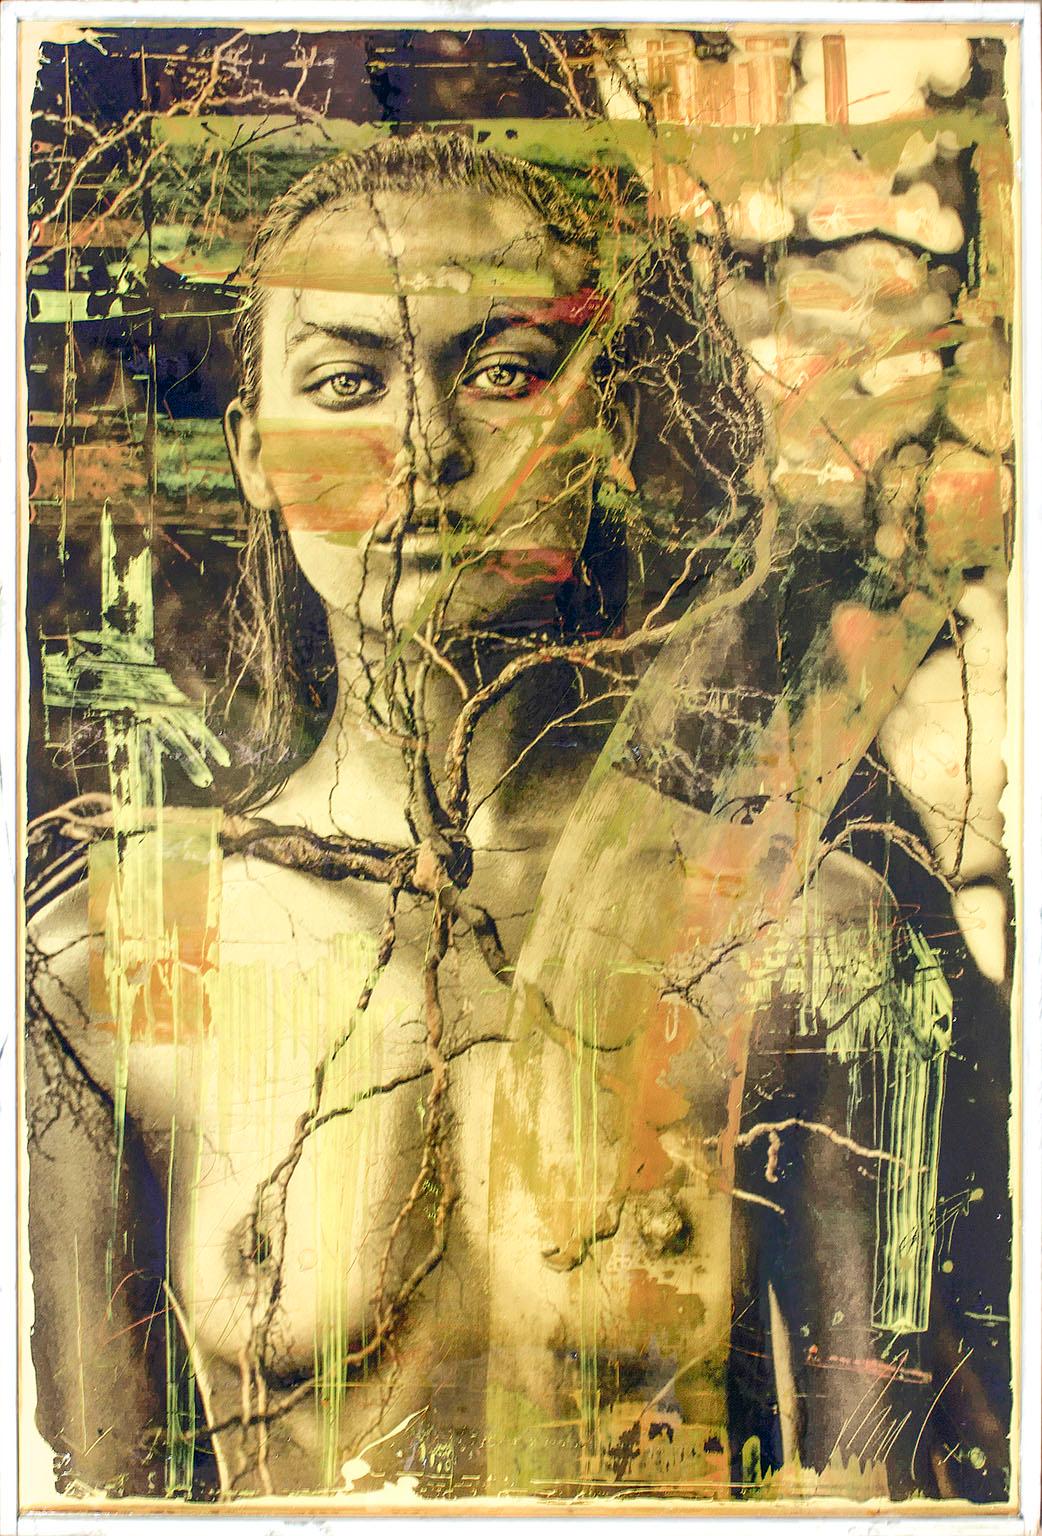 "Eocene" impression d'archives d'une femme nue et peinture acrylique enrobée de résine œuvre mixte signée de l'artiste Raphael Mazzucco.